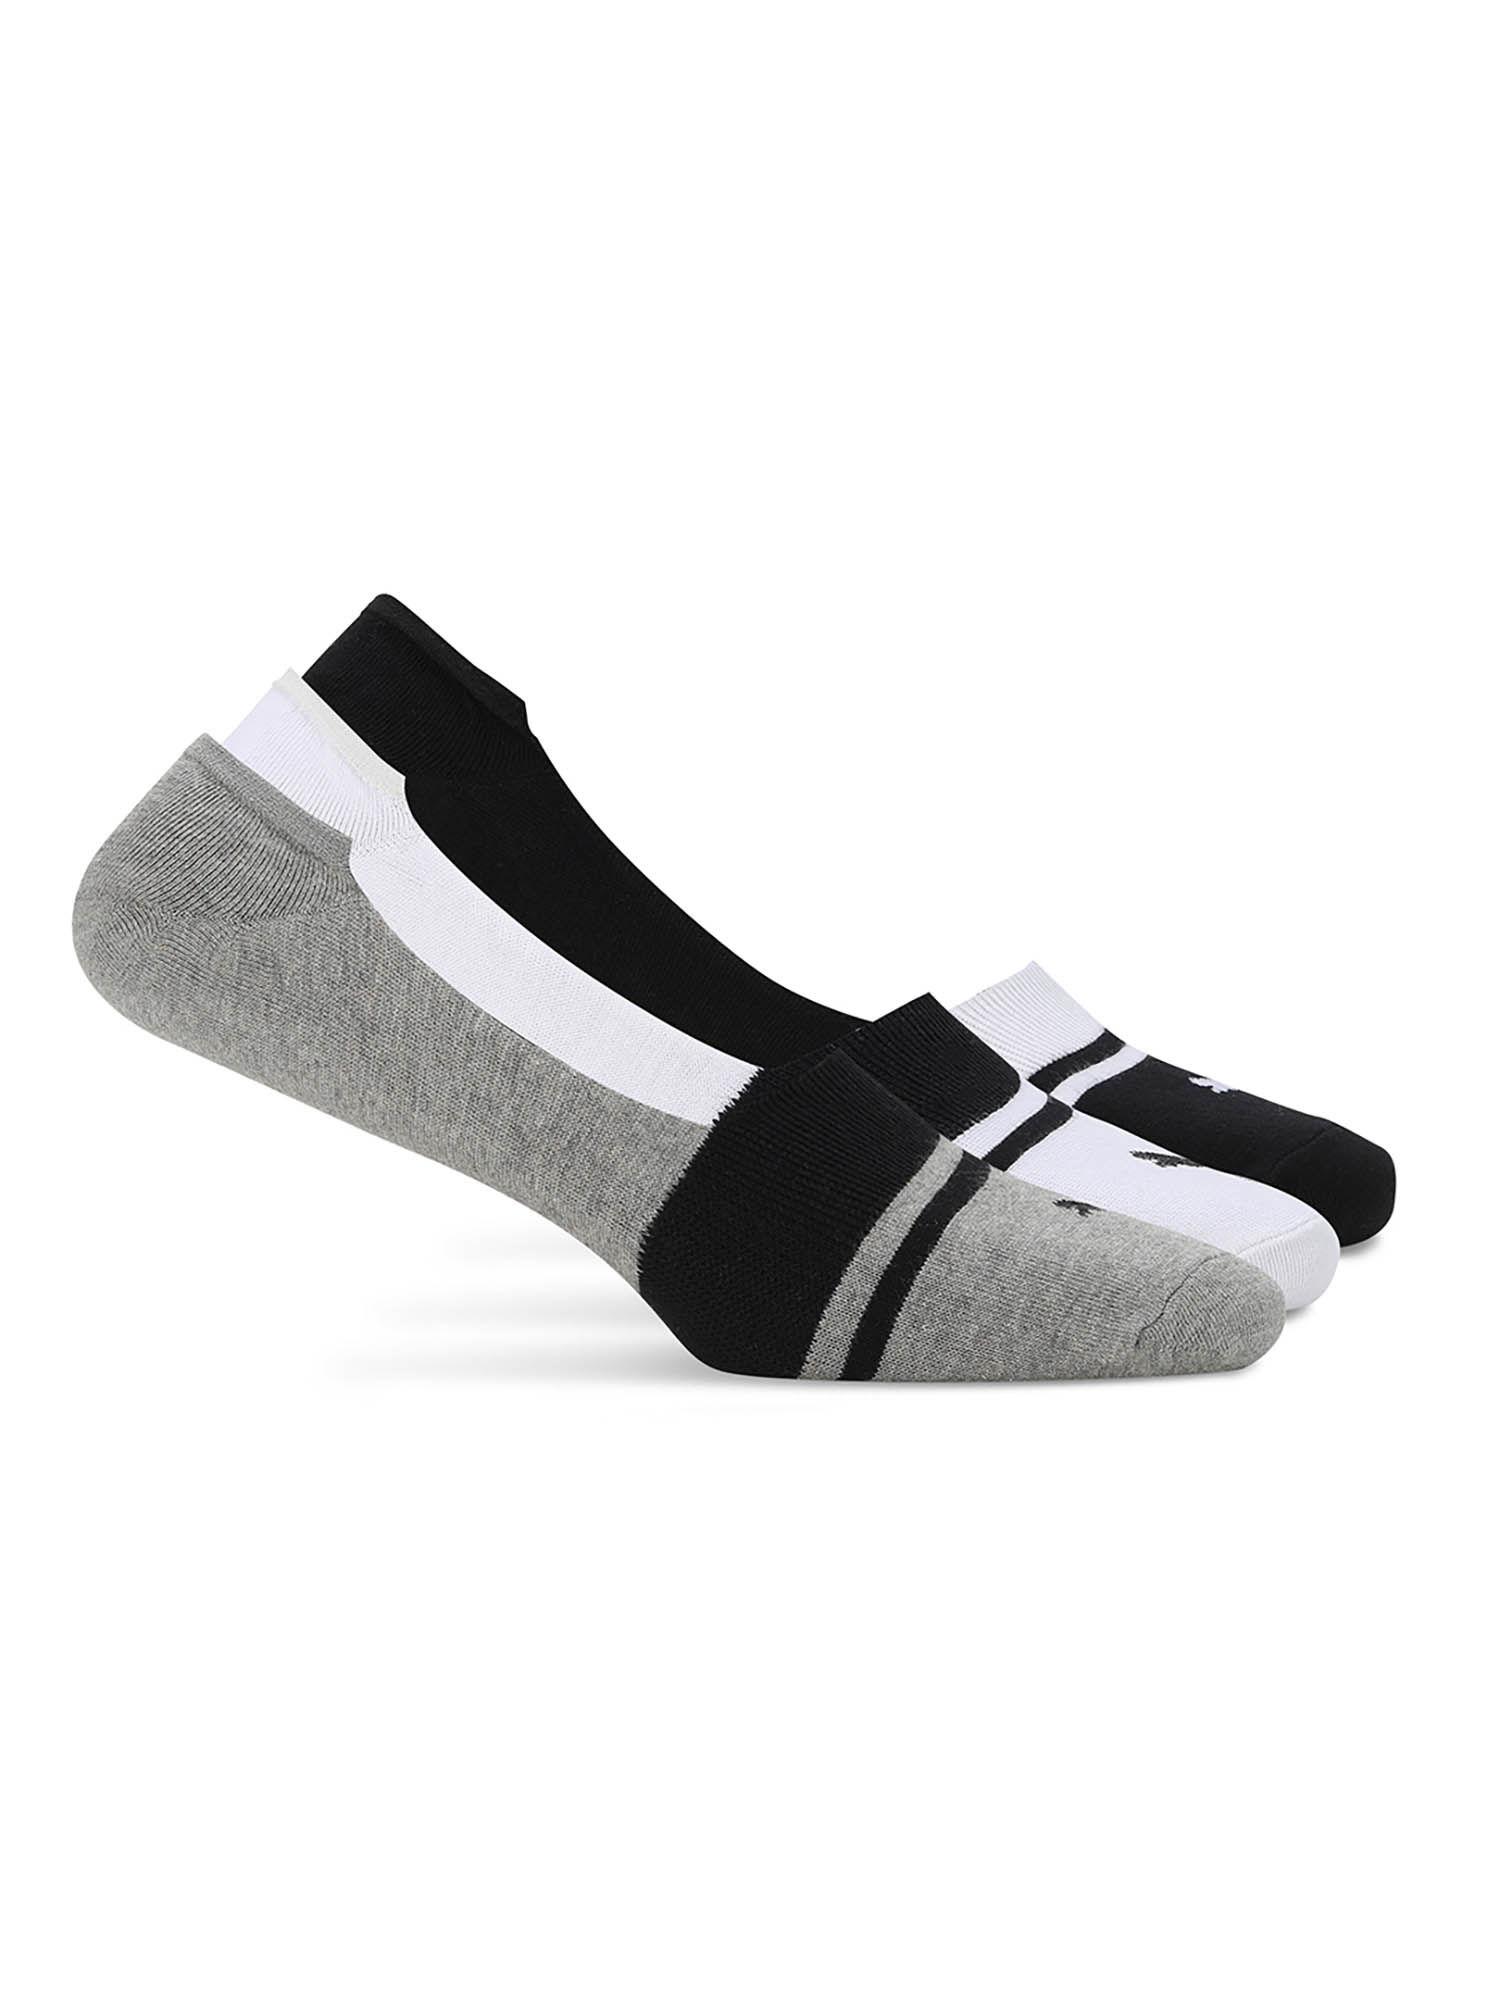 heritage-footie-unisex-multi-color-socks-(pack-of-3)